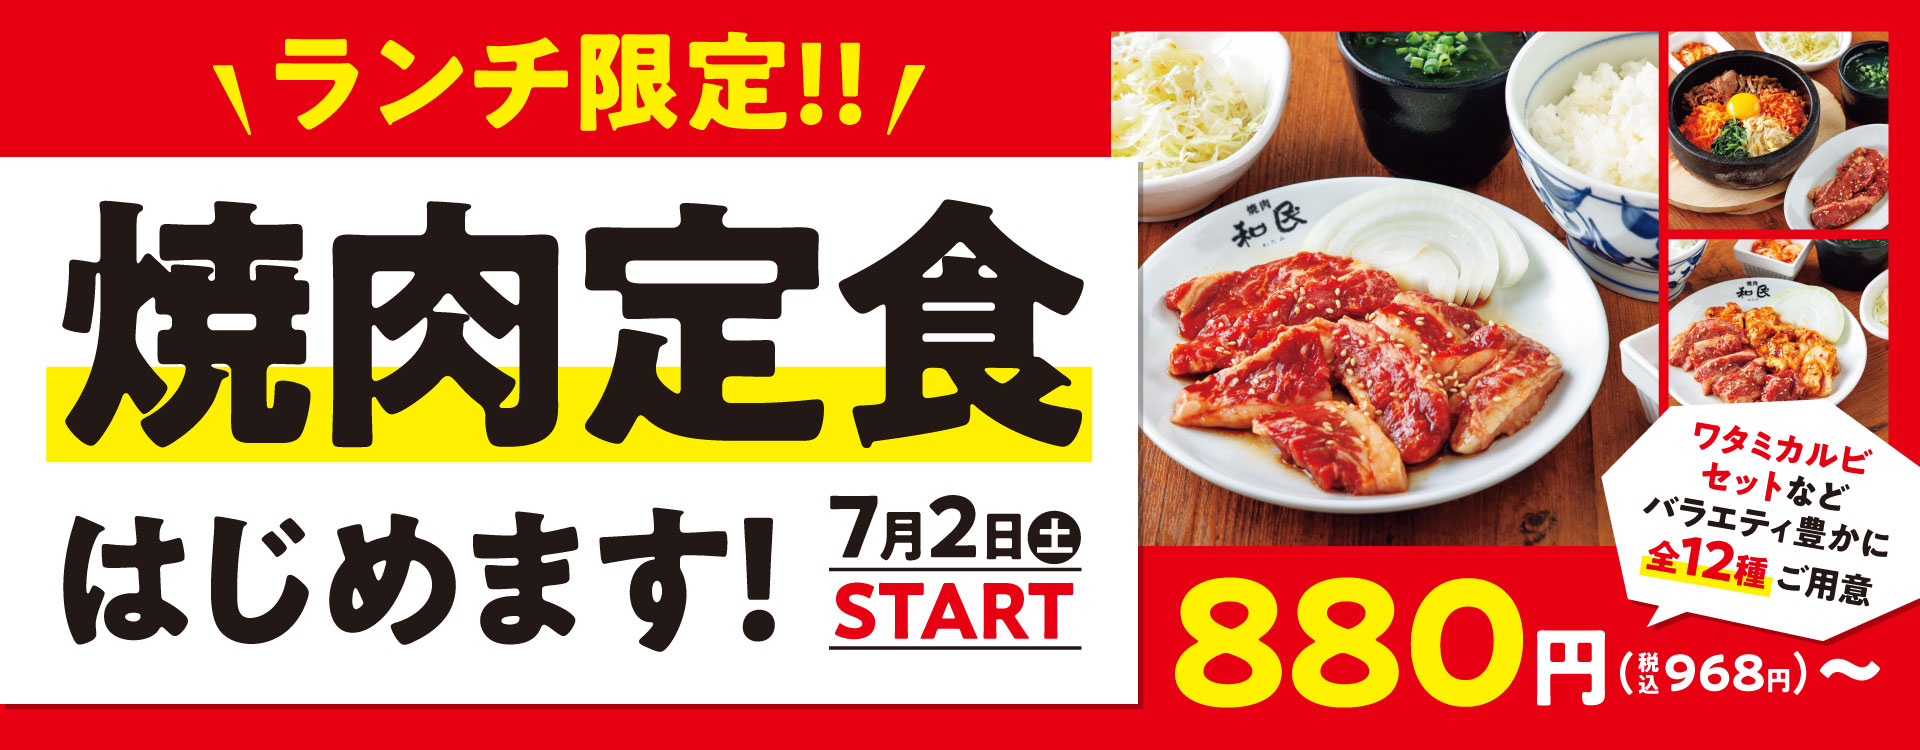 焼肉の和民西台店でランチ限定で焼肉定食の提供開始のお知らせ画像